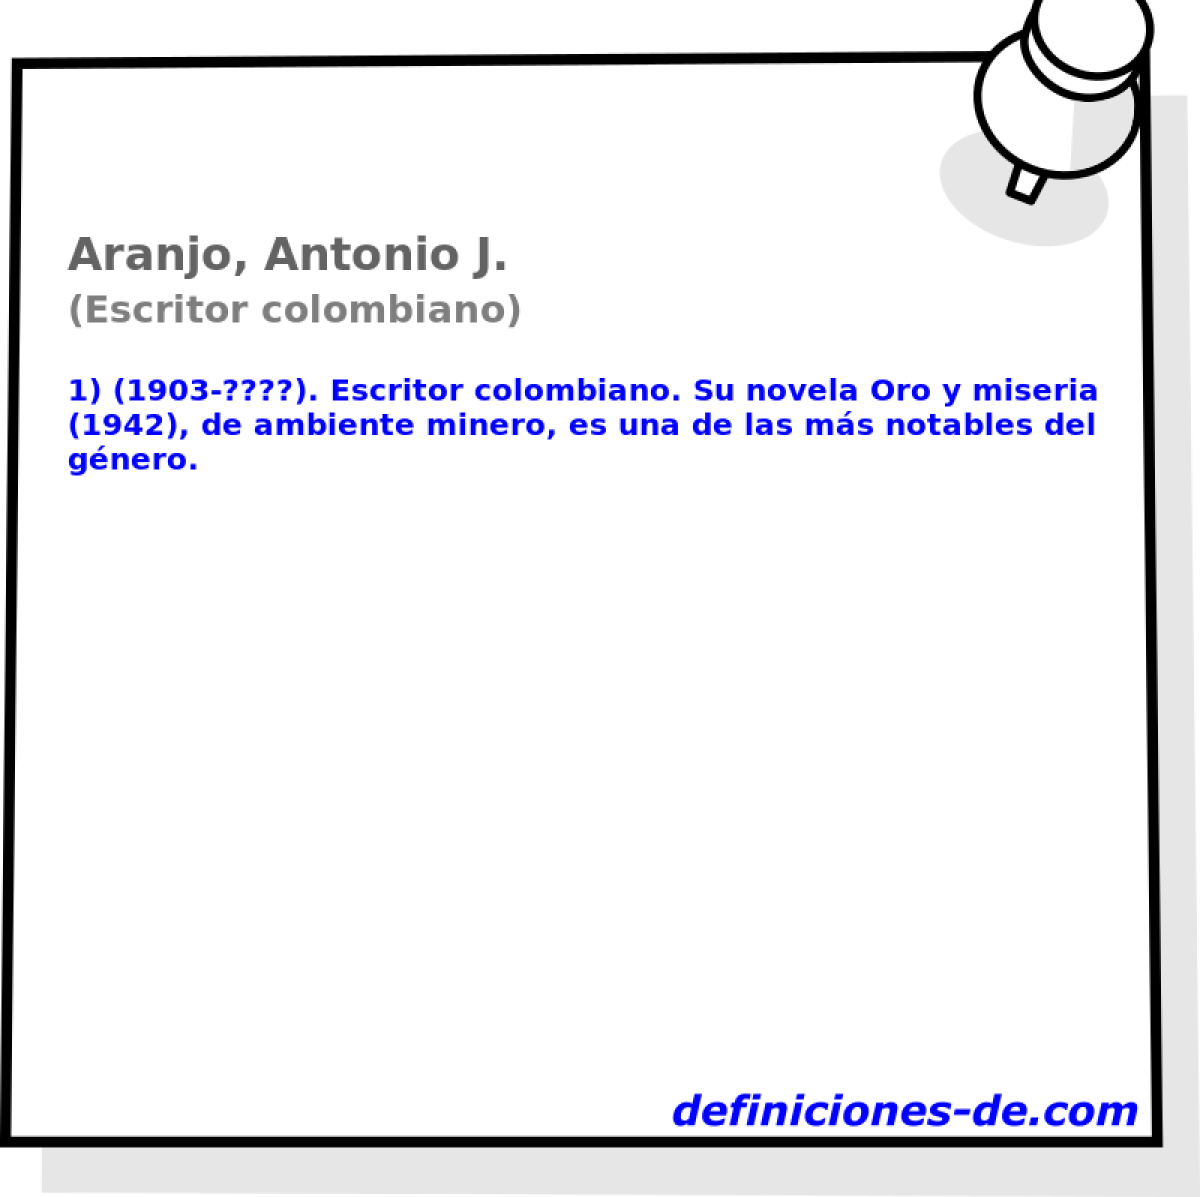 Aranjo, Antonio J. (Escritor colombiano)